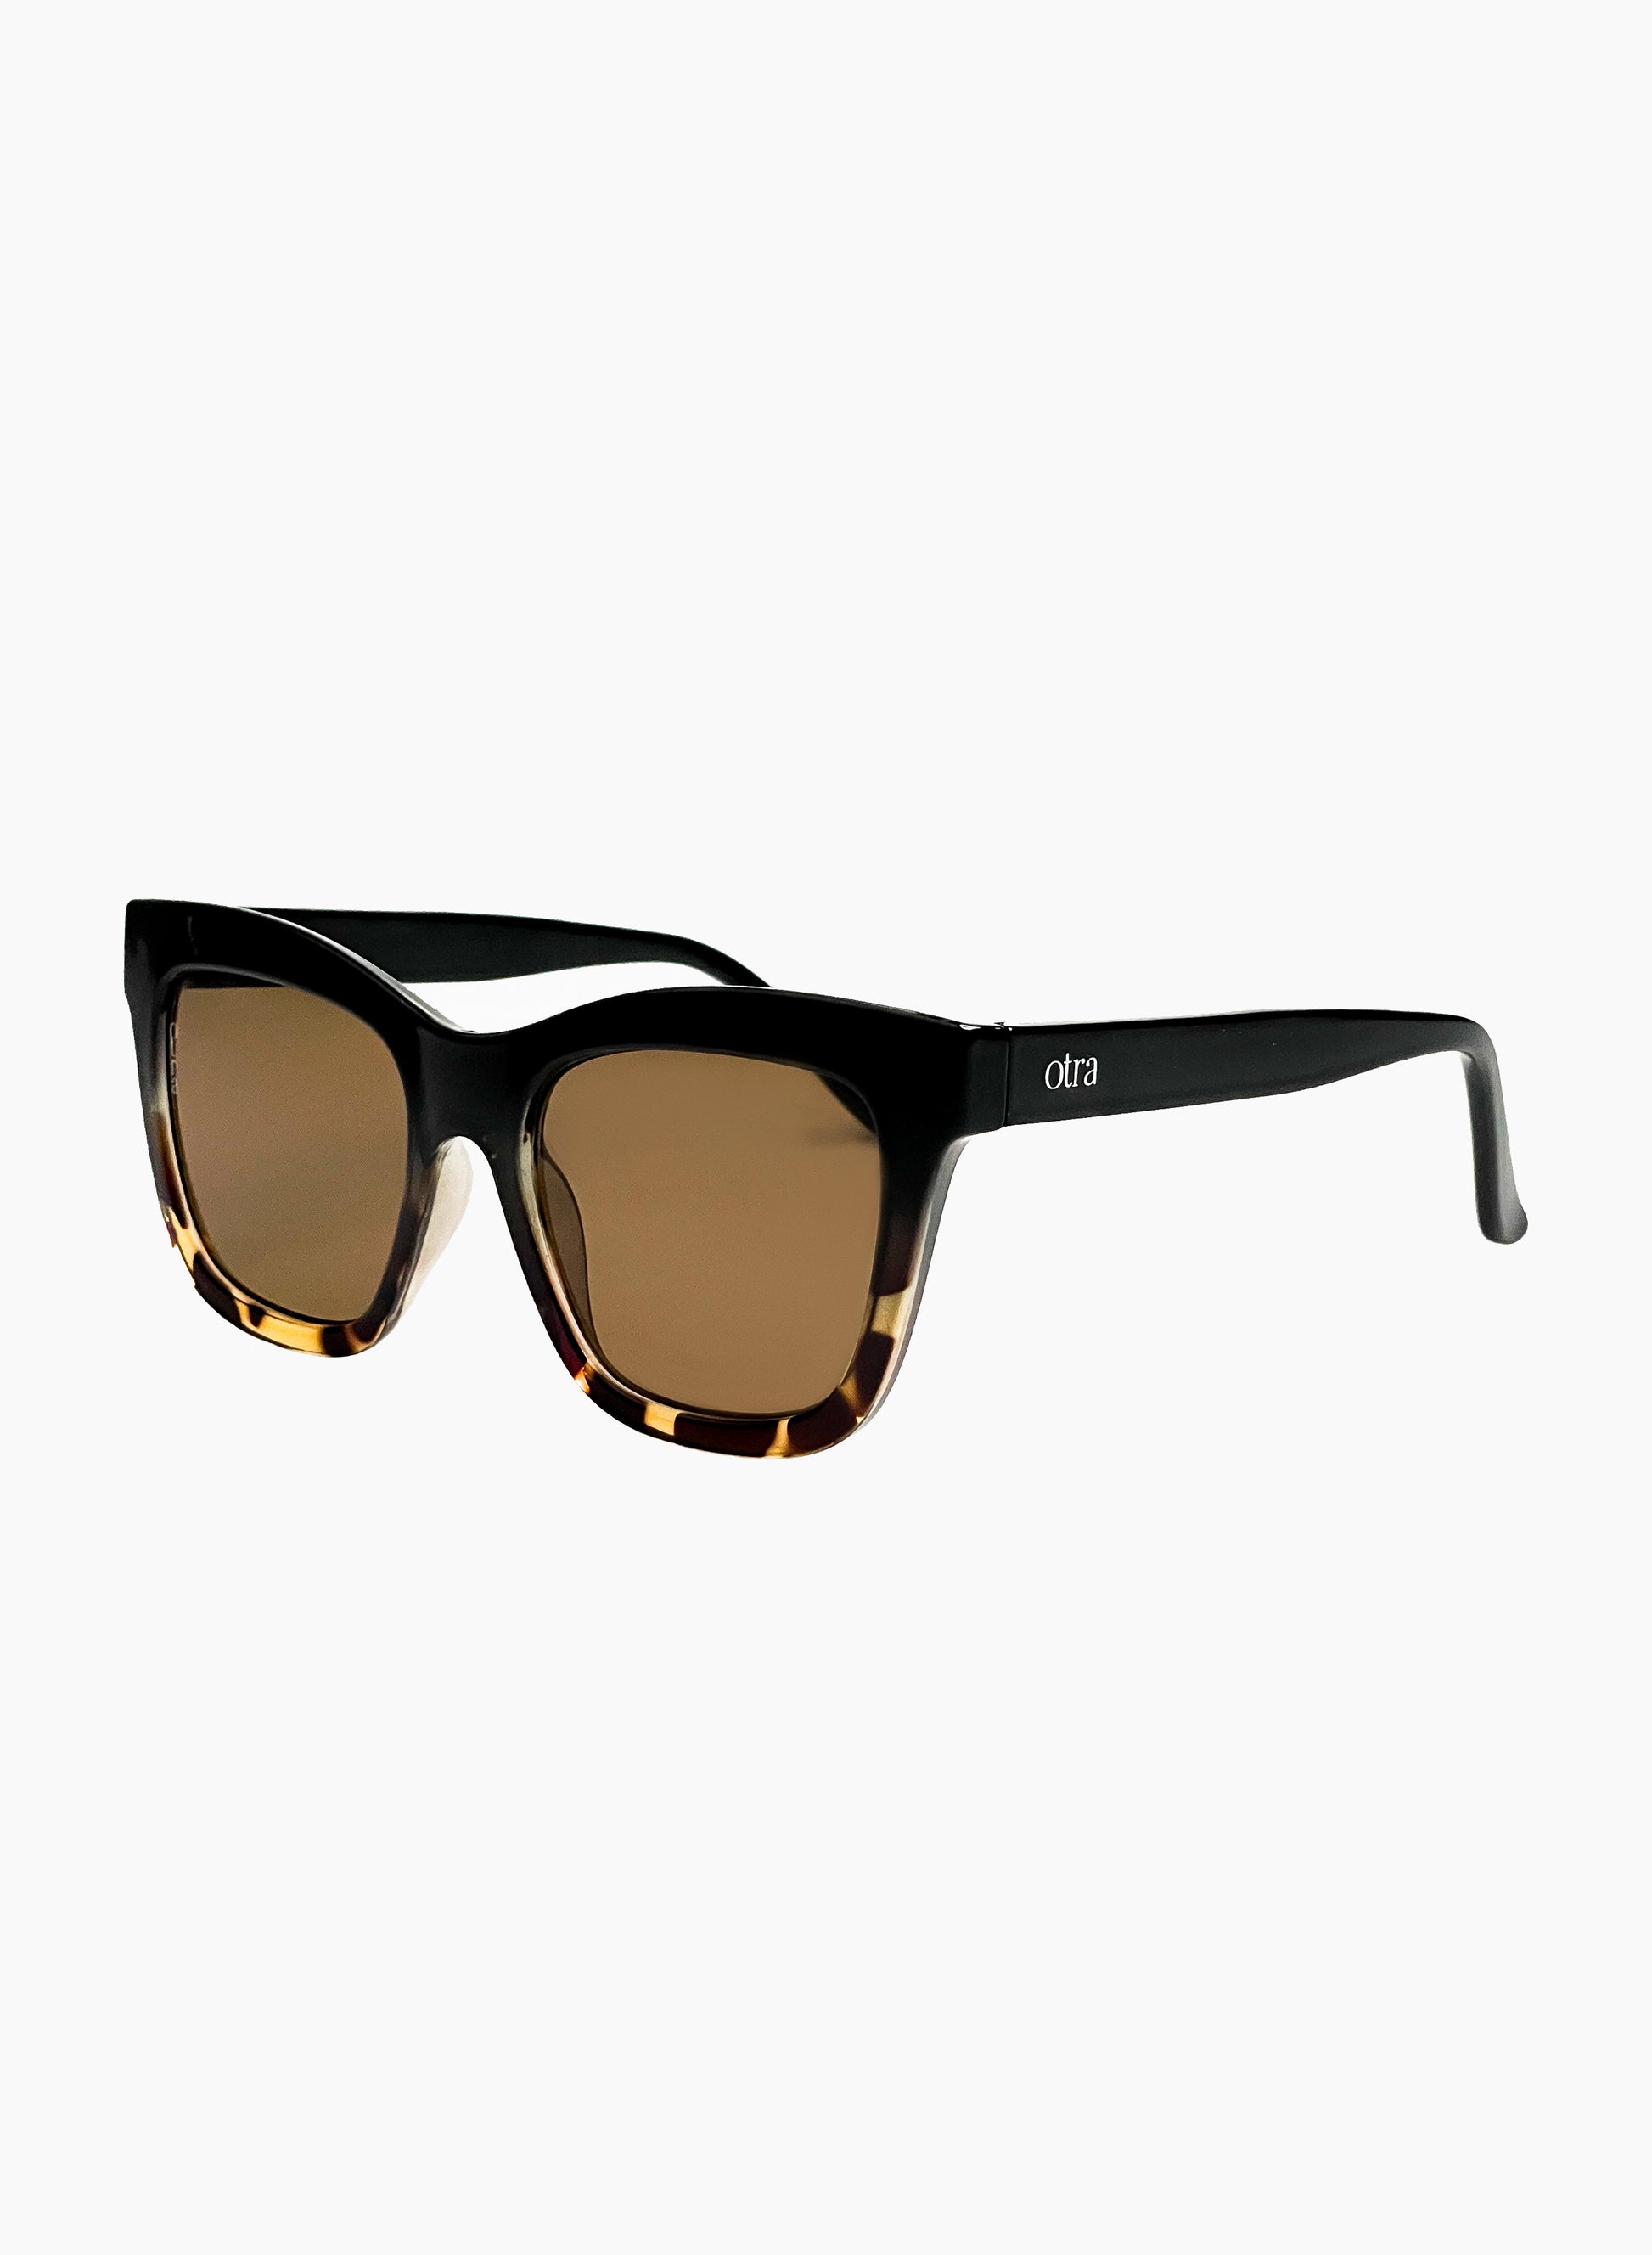 Side view of Irma cat eye sunglasses in brown tortoiseshell